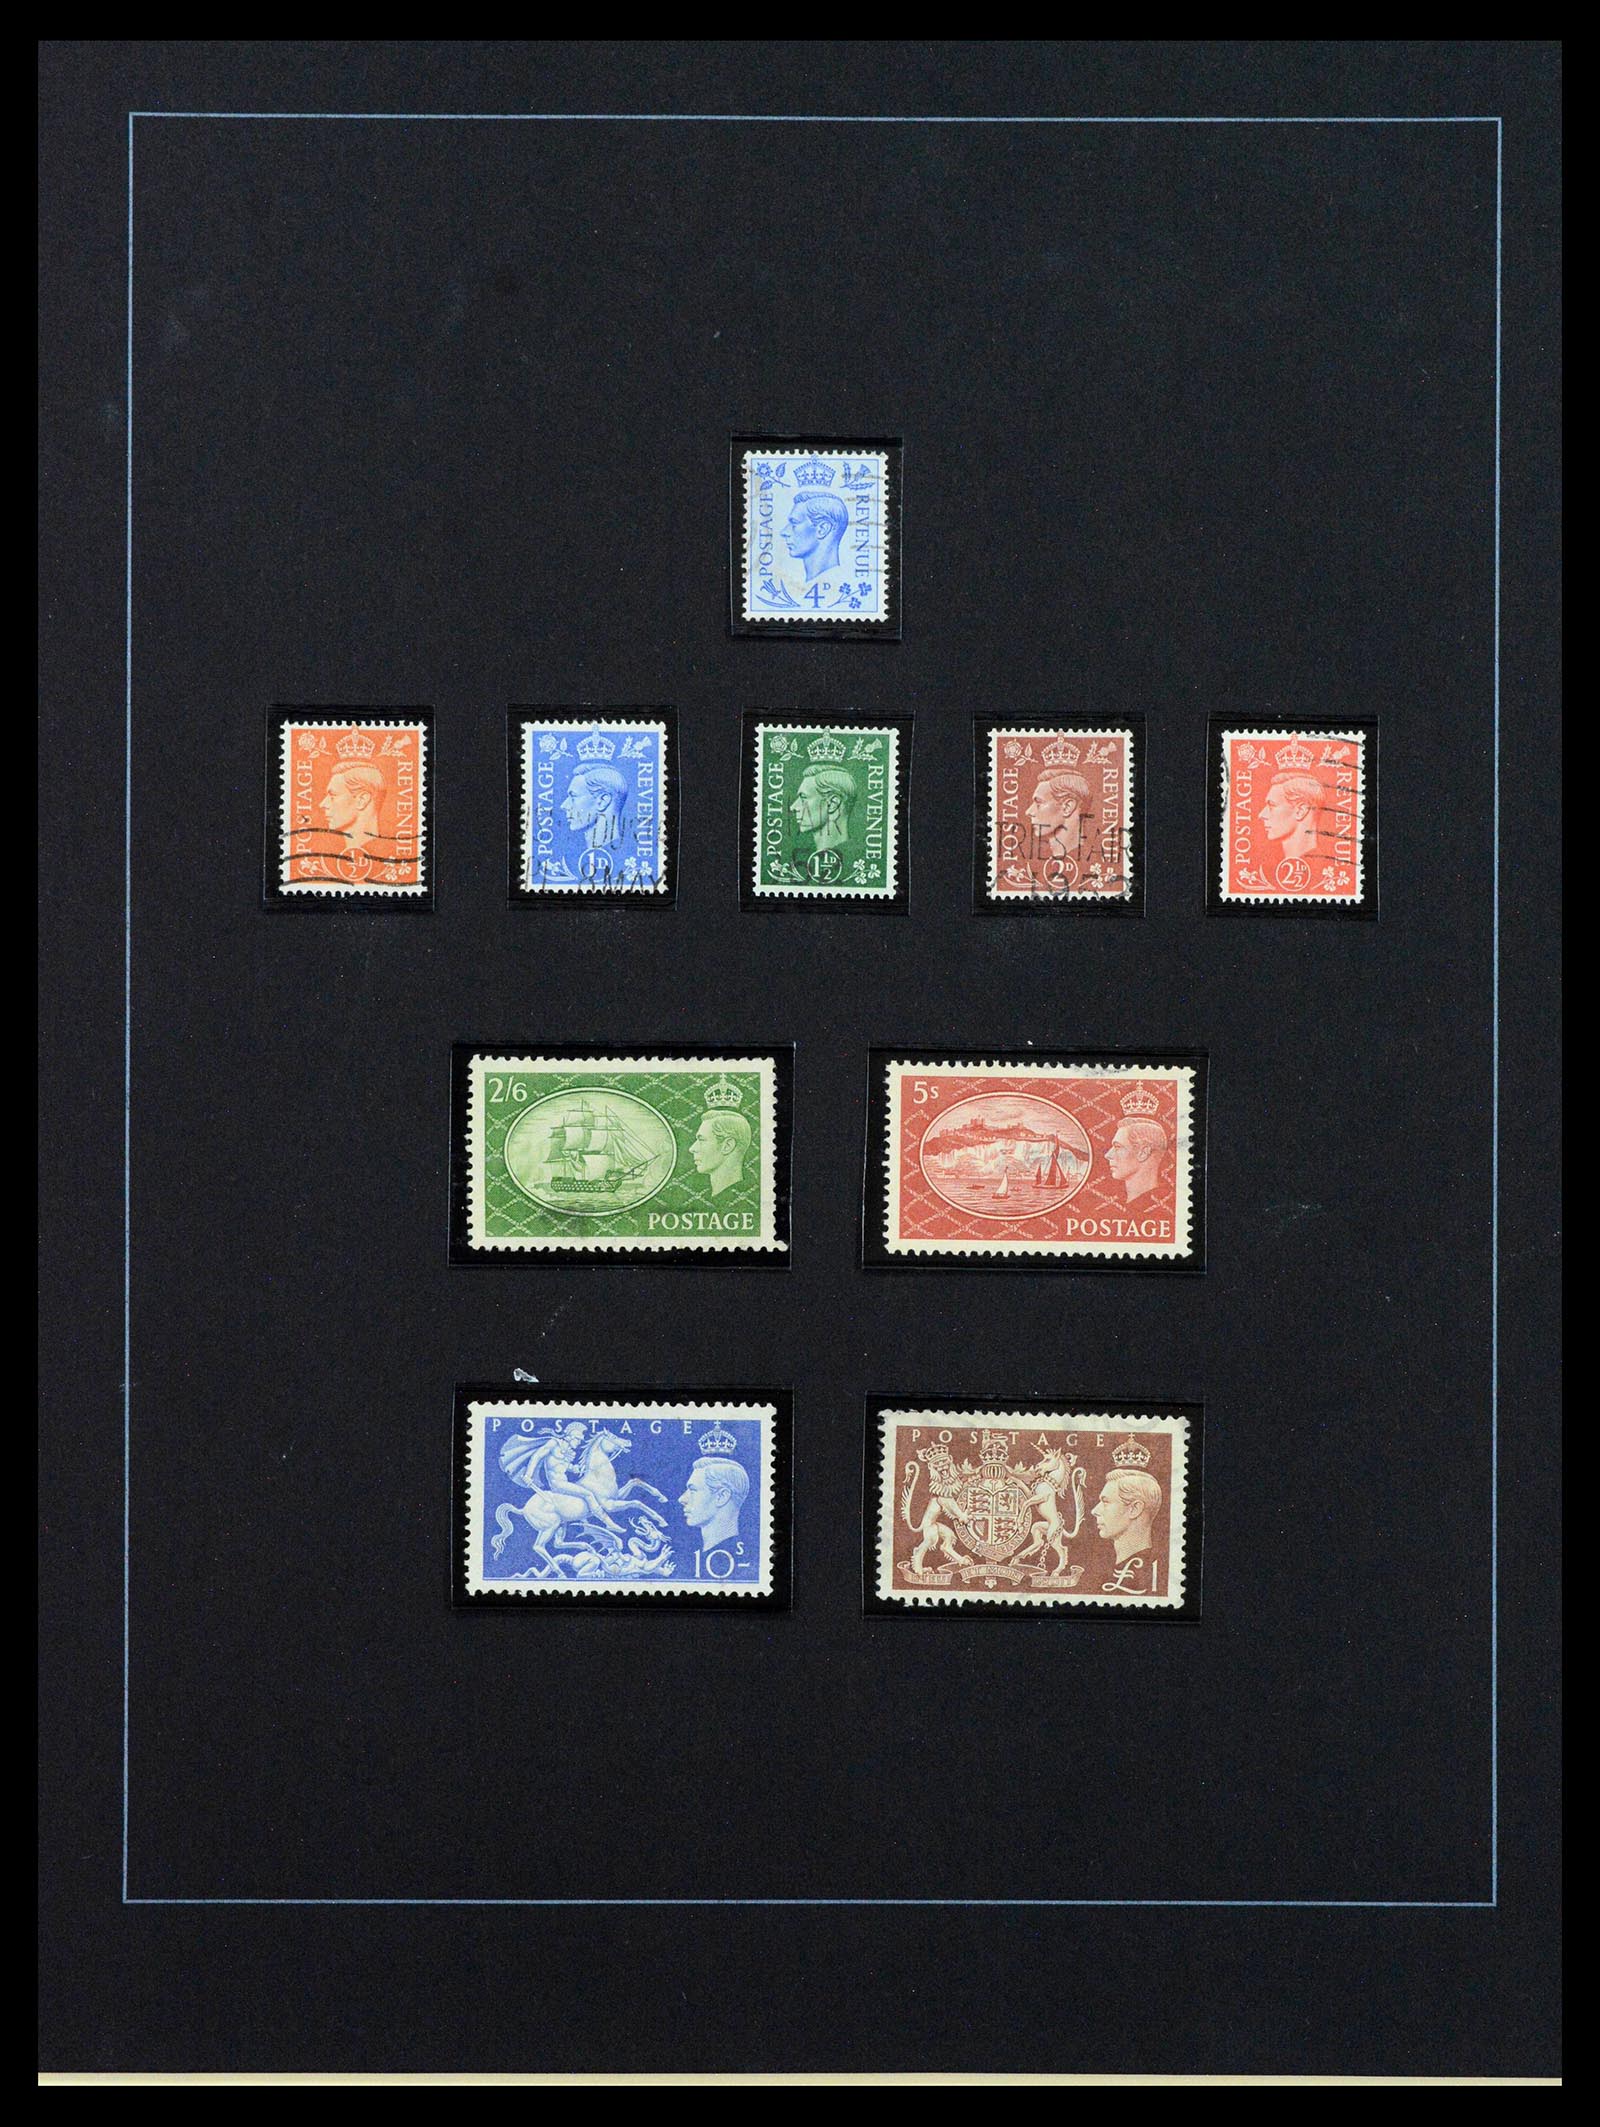 39375 0042 - Postzegelverzameling 39375 Engeland topverzameling 1840-1980.